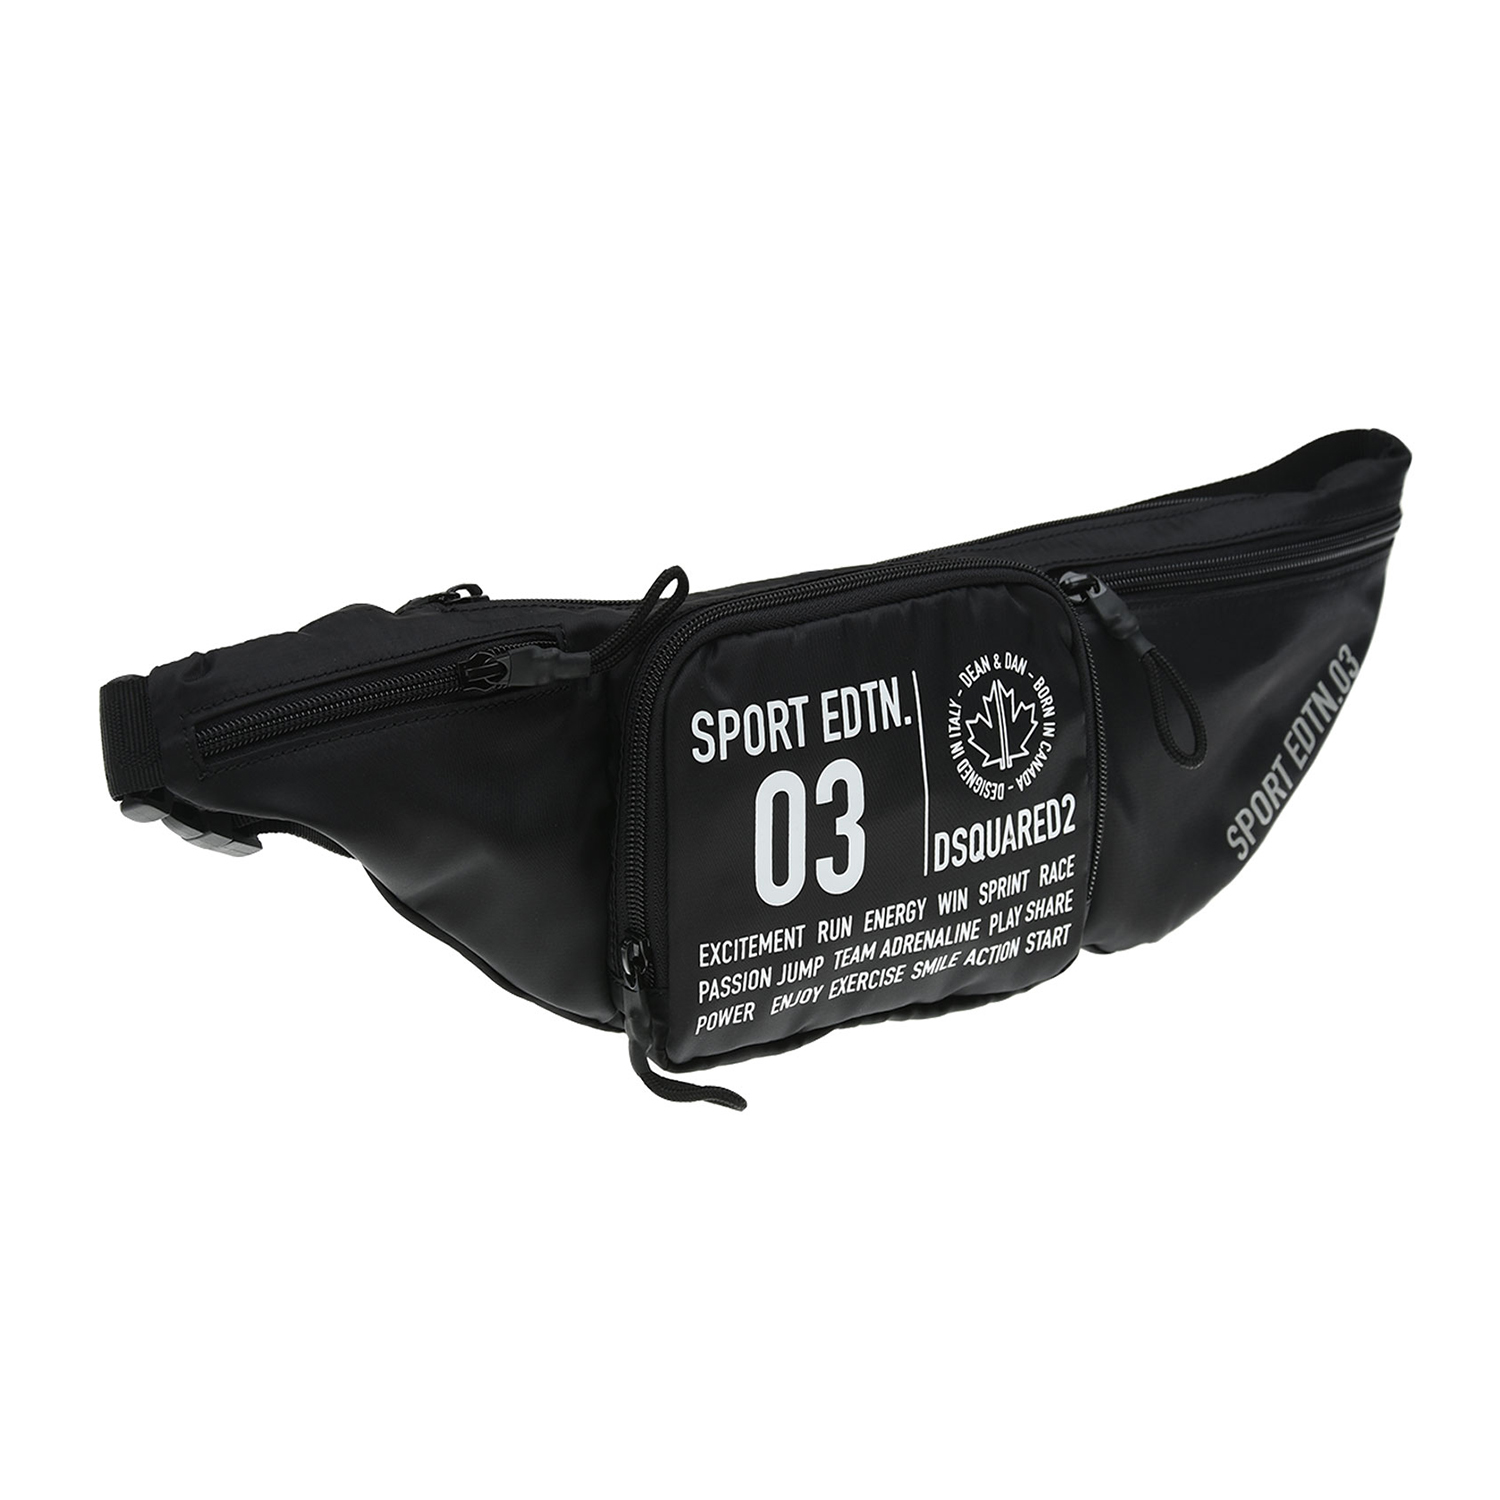 Черная поясная сумка с принтом "Sport edtn 03",15х7х45 см Dsquared2 детская, размер unica, цвет черный - фото 1